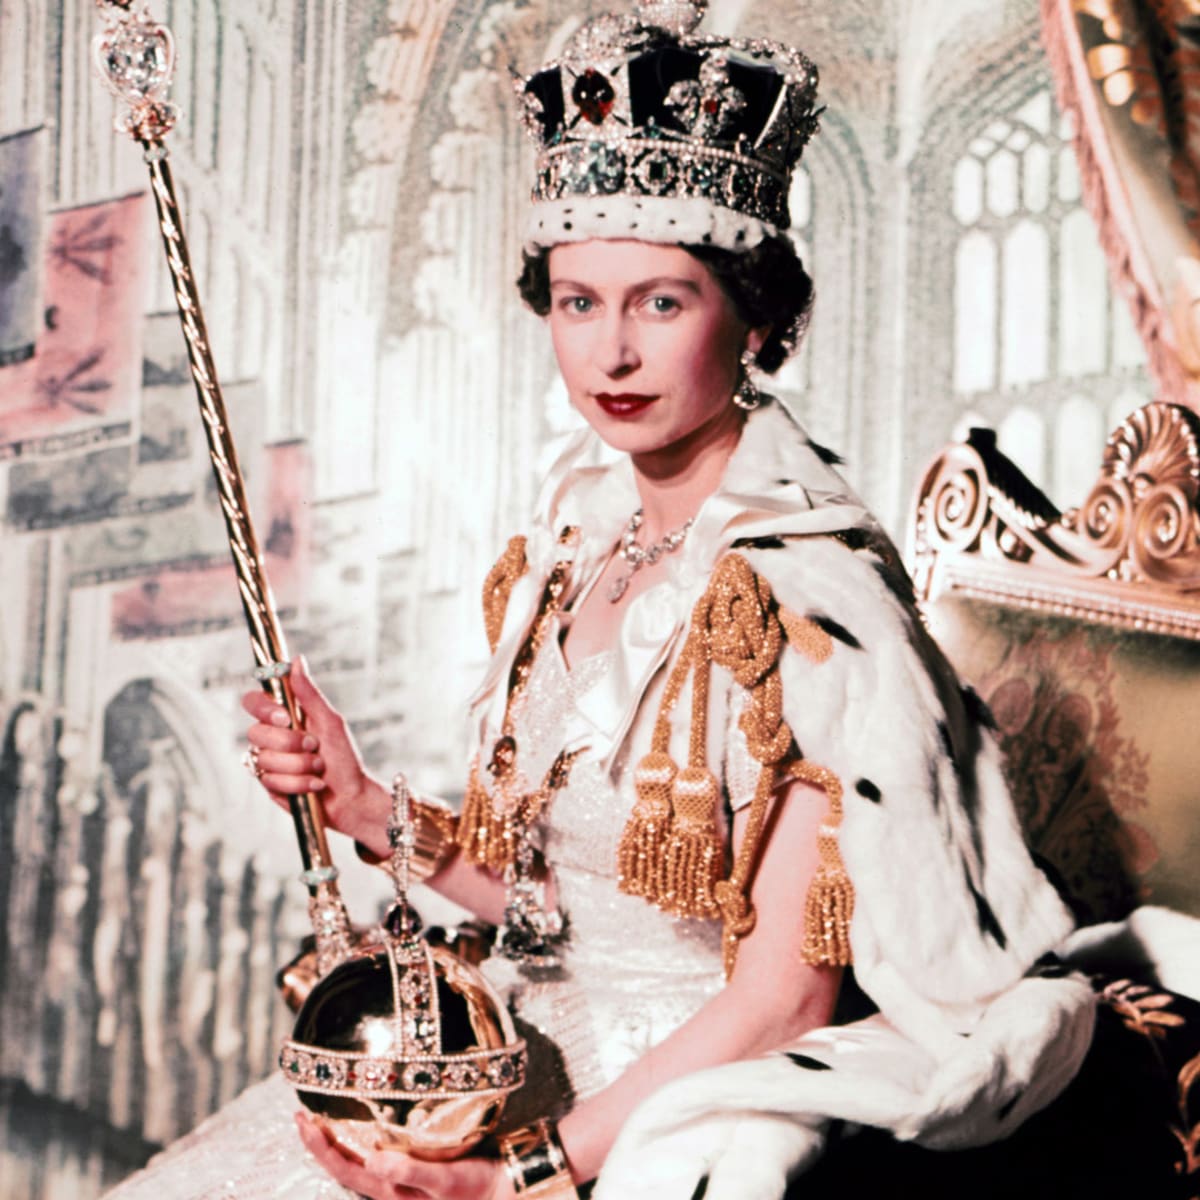 Iconic Women Leaders and Queen Elizabeth II